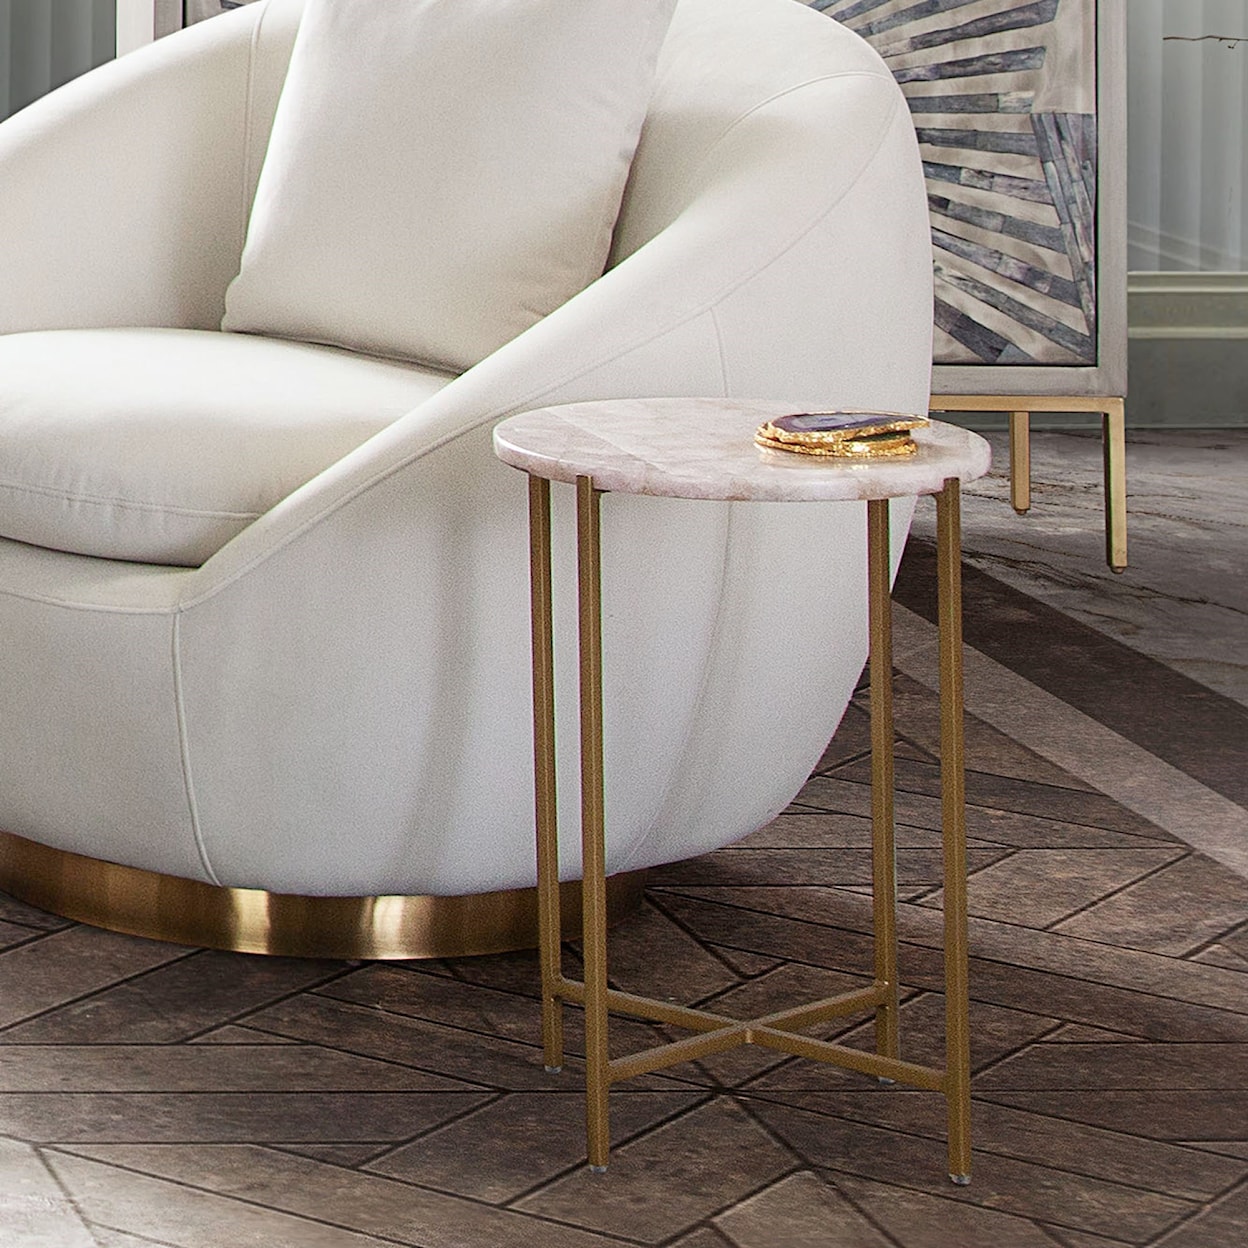 Diamond Sofa Furniture Mika Round Accent Table w/ Rose Quartz Top